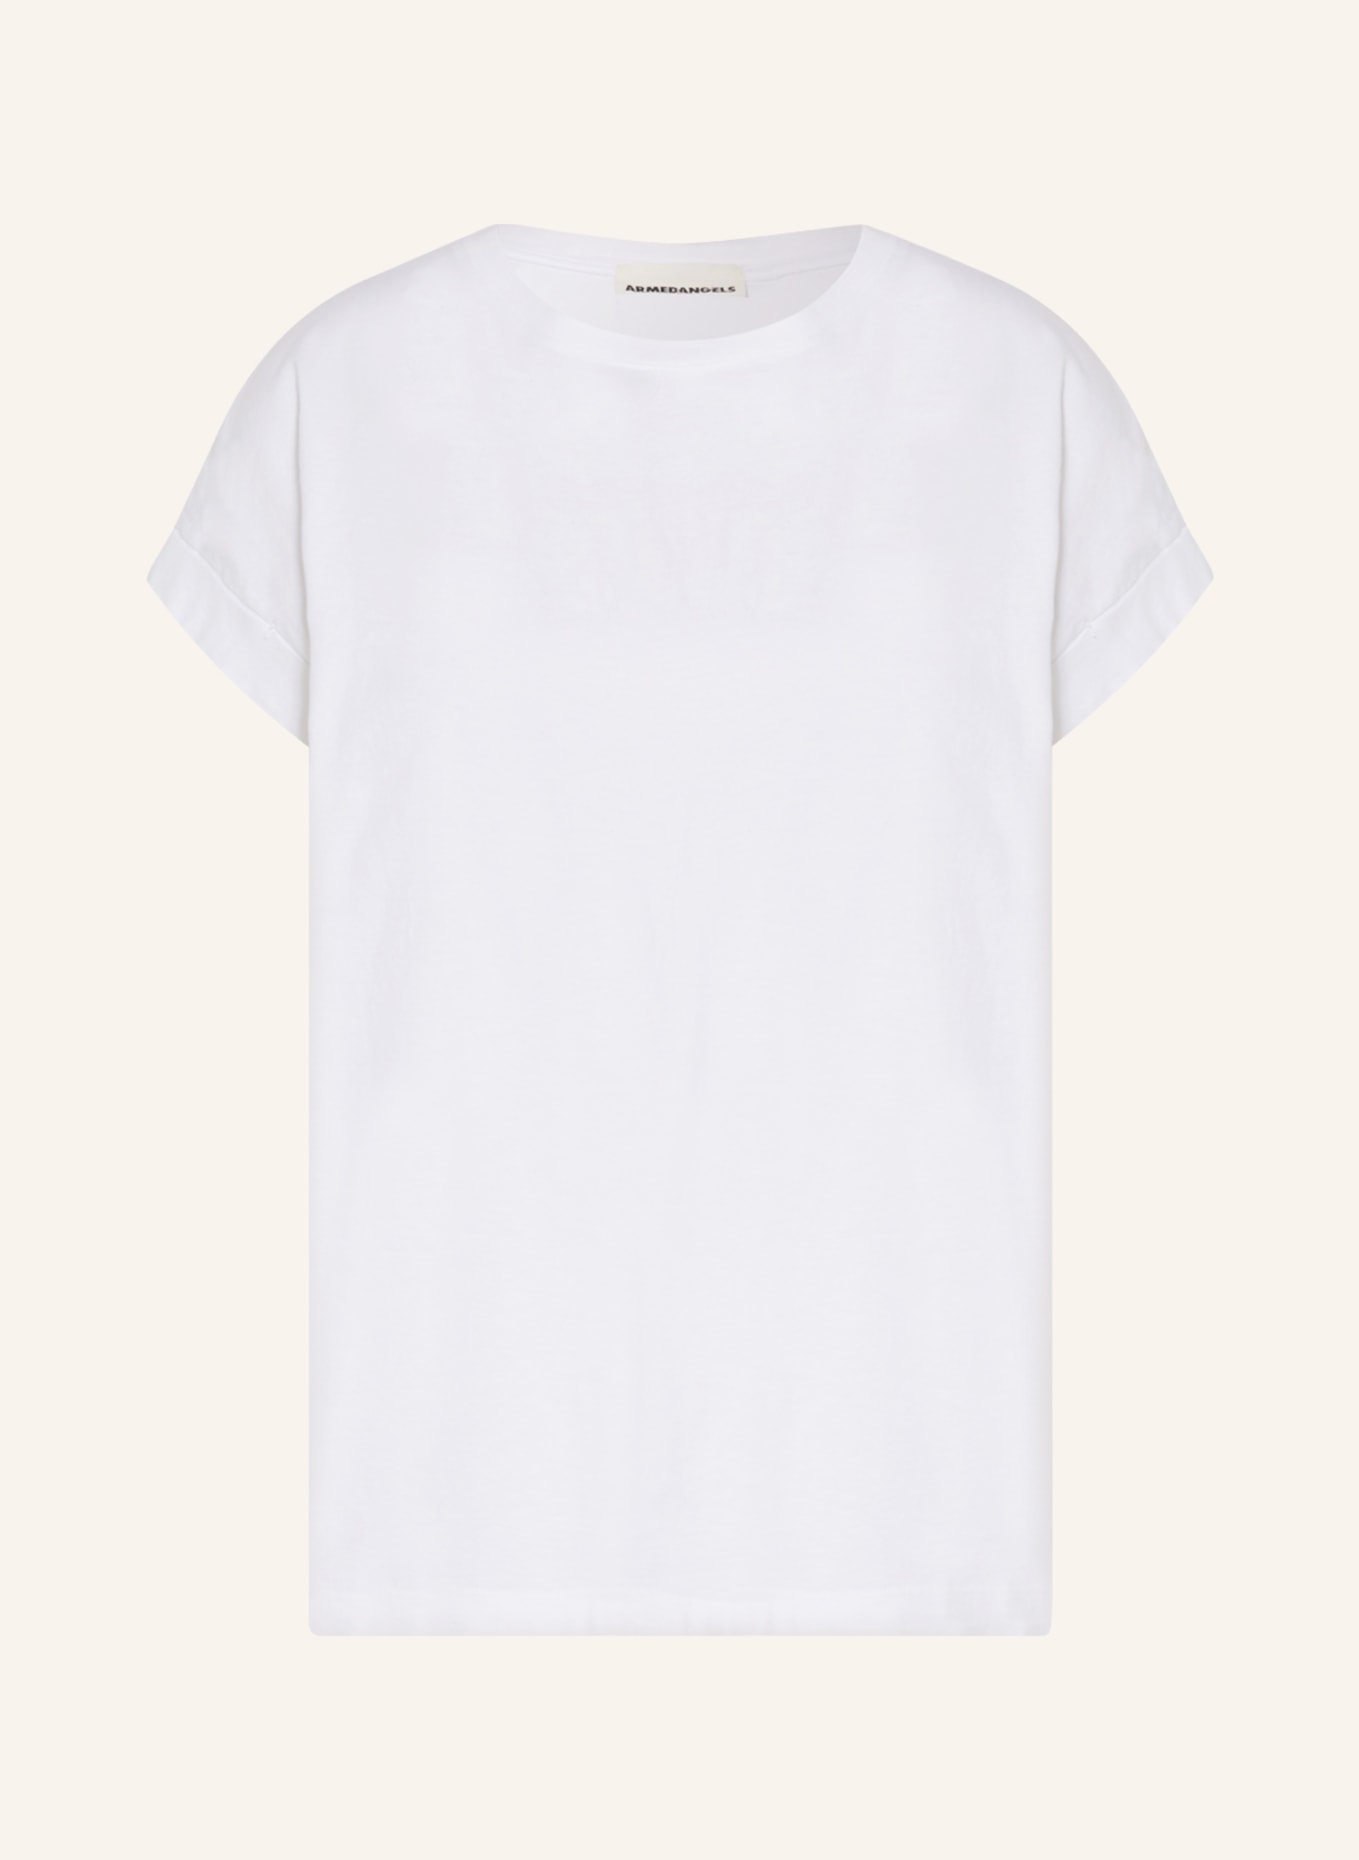 ARMEDANGELS T-shirt IDAARA, Color: WHITE (Image 1)